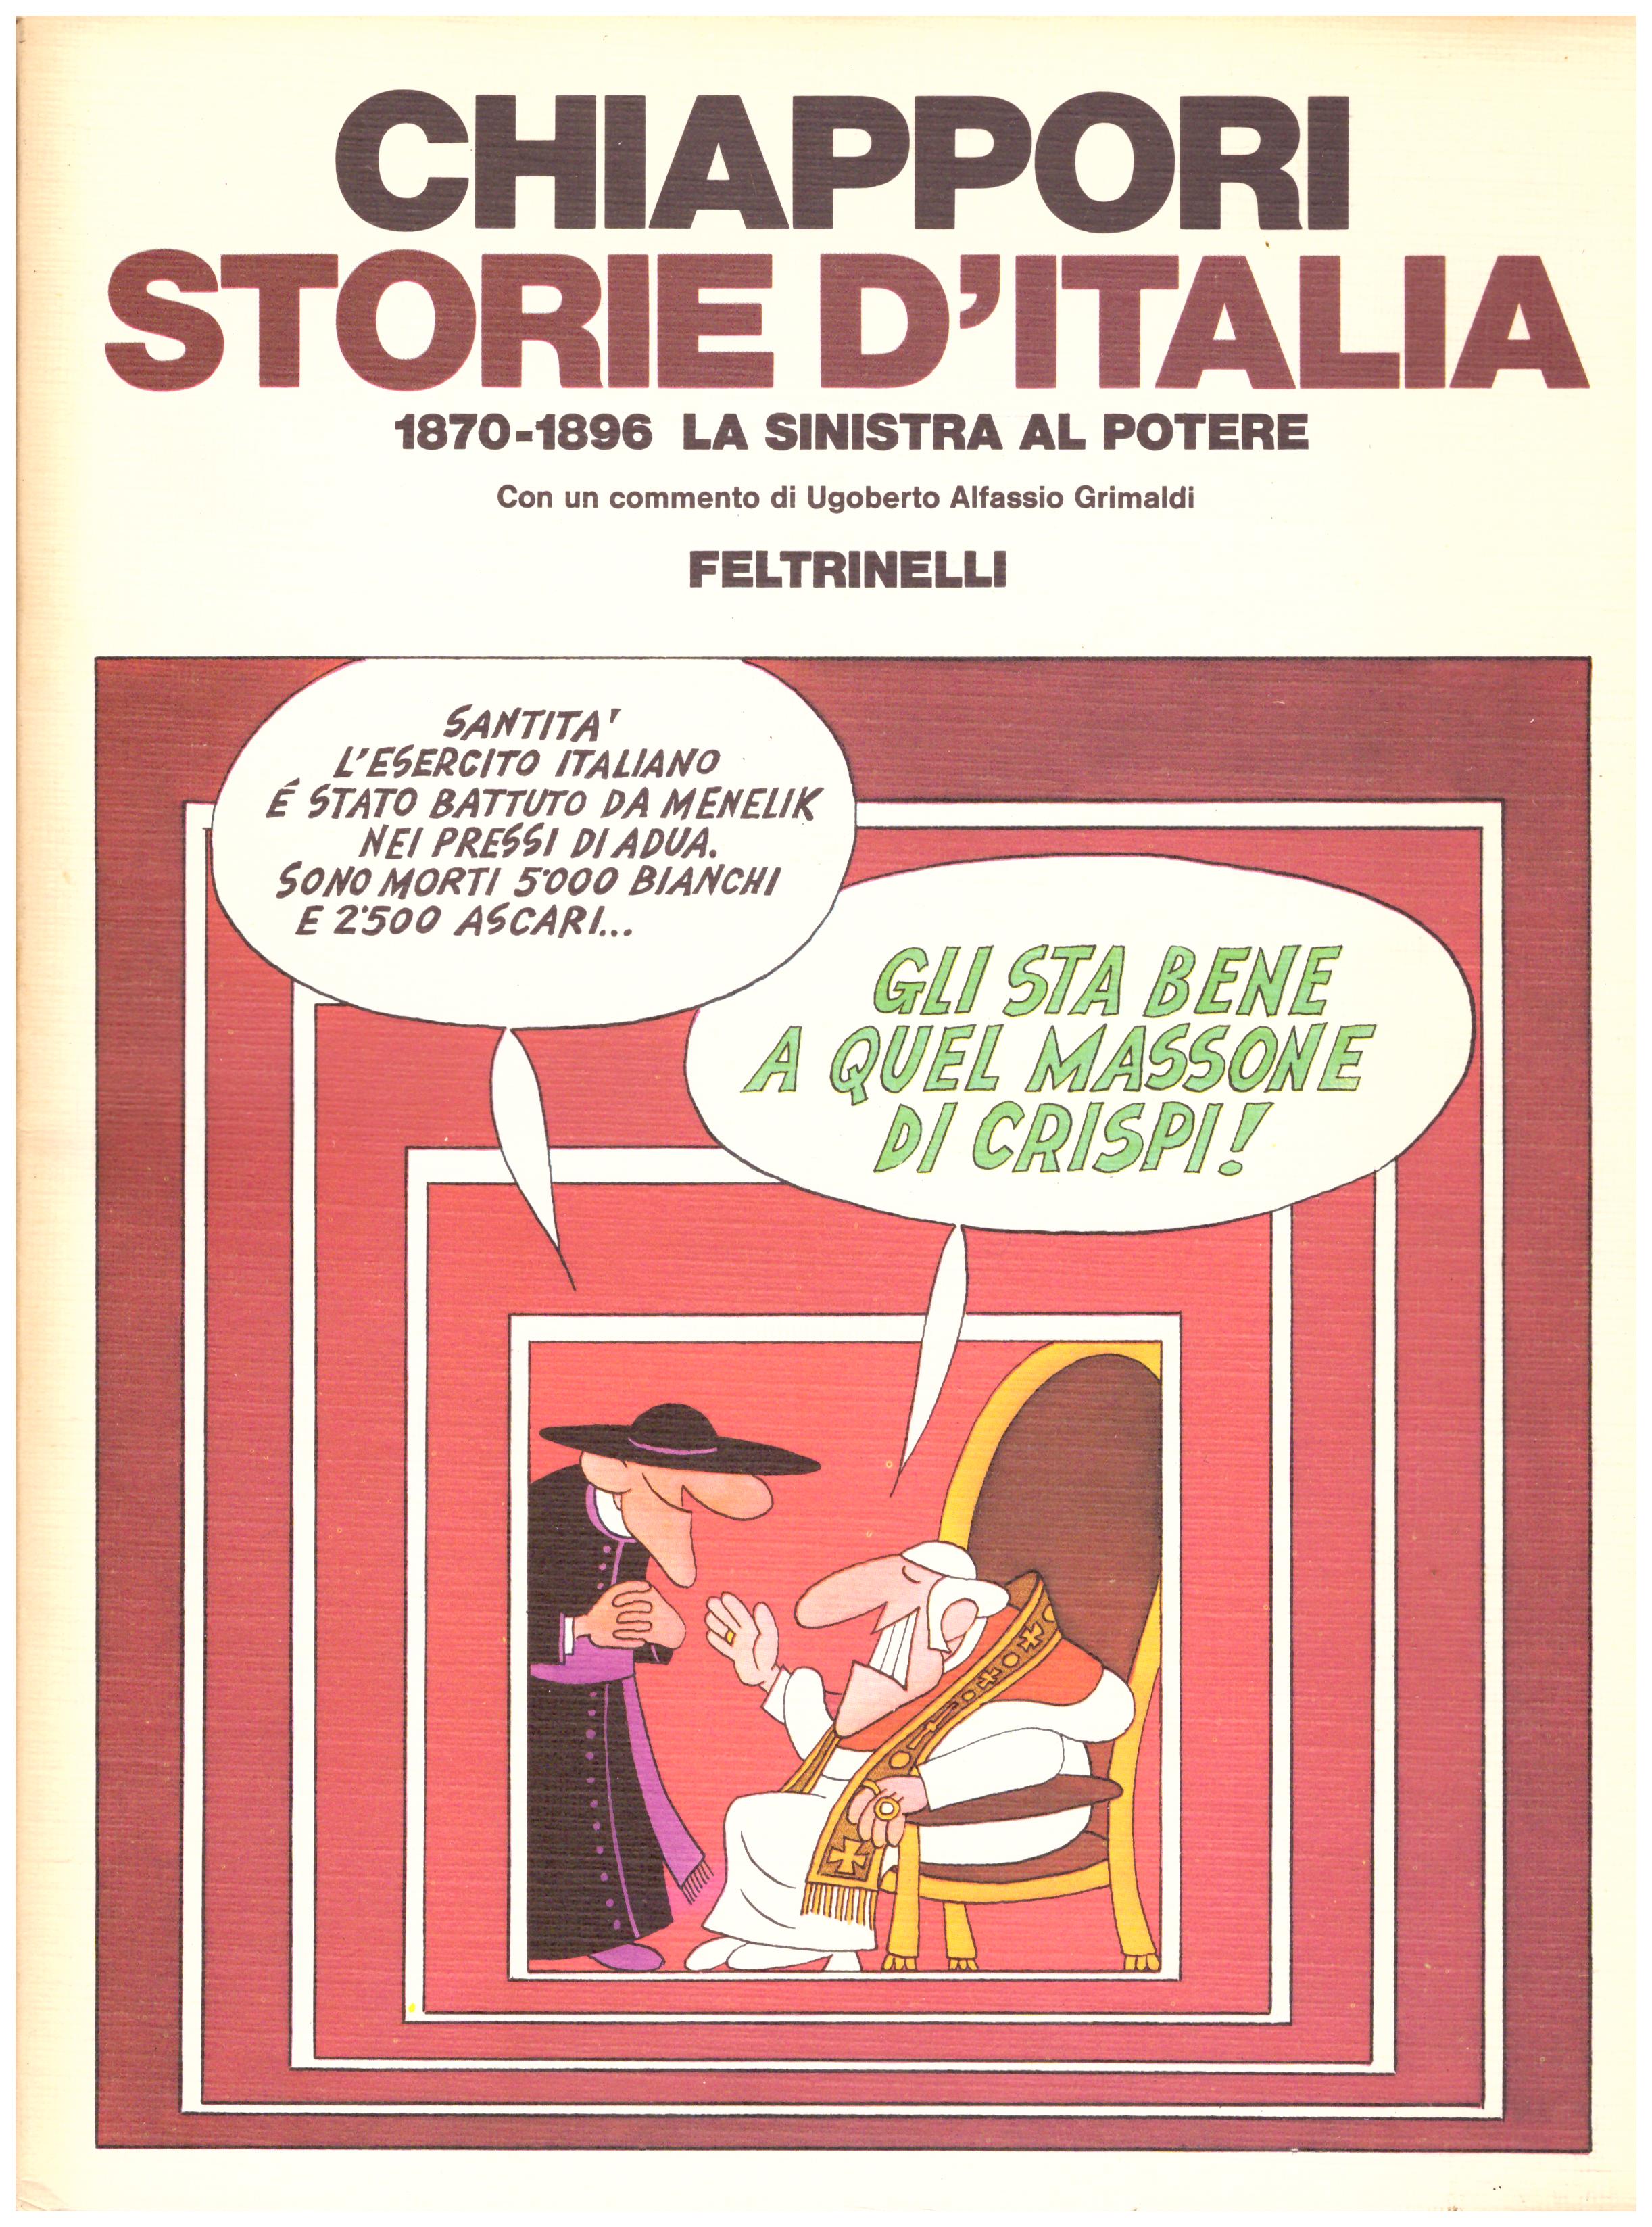 Titolo: Storie d'Italia 1870-1896 La Sinistra al potere  Autore: Alfredo Chiappori  Editore: Feltrinelli 1979